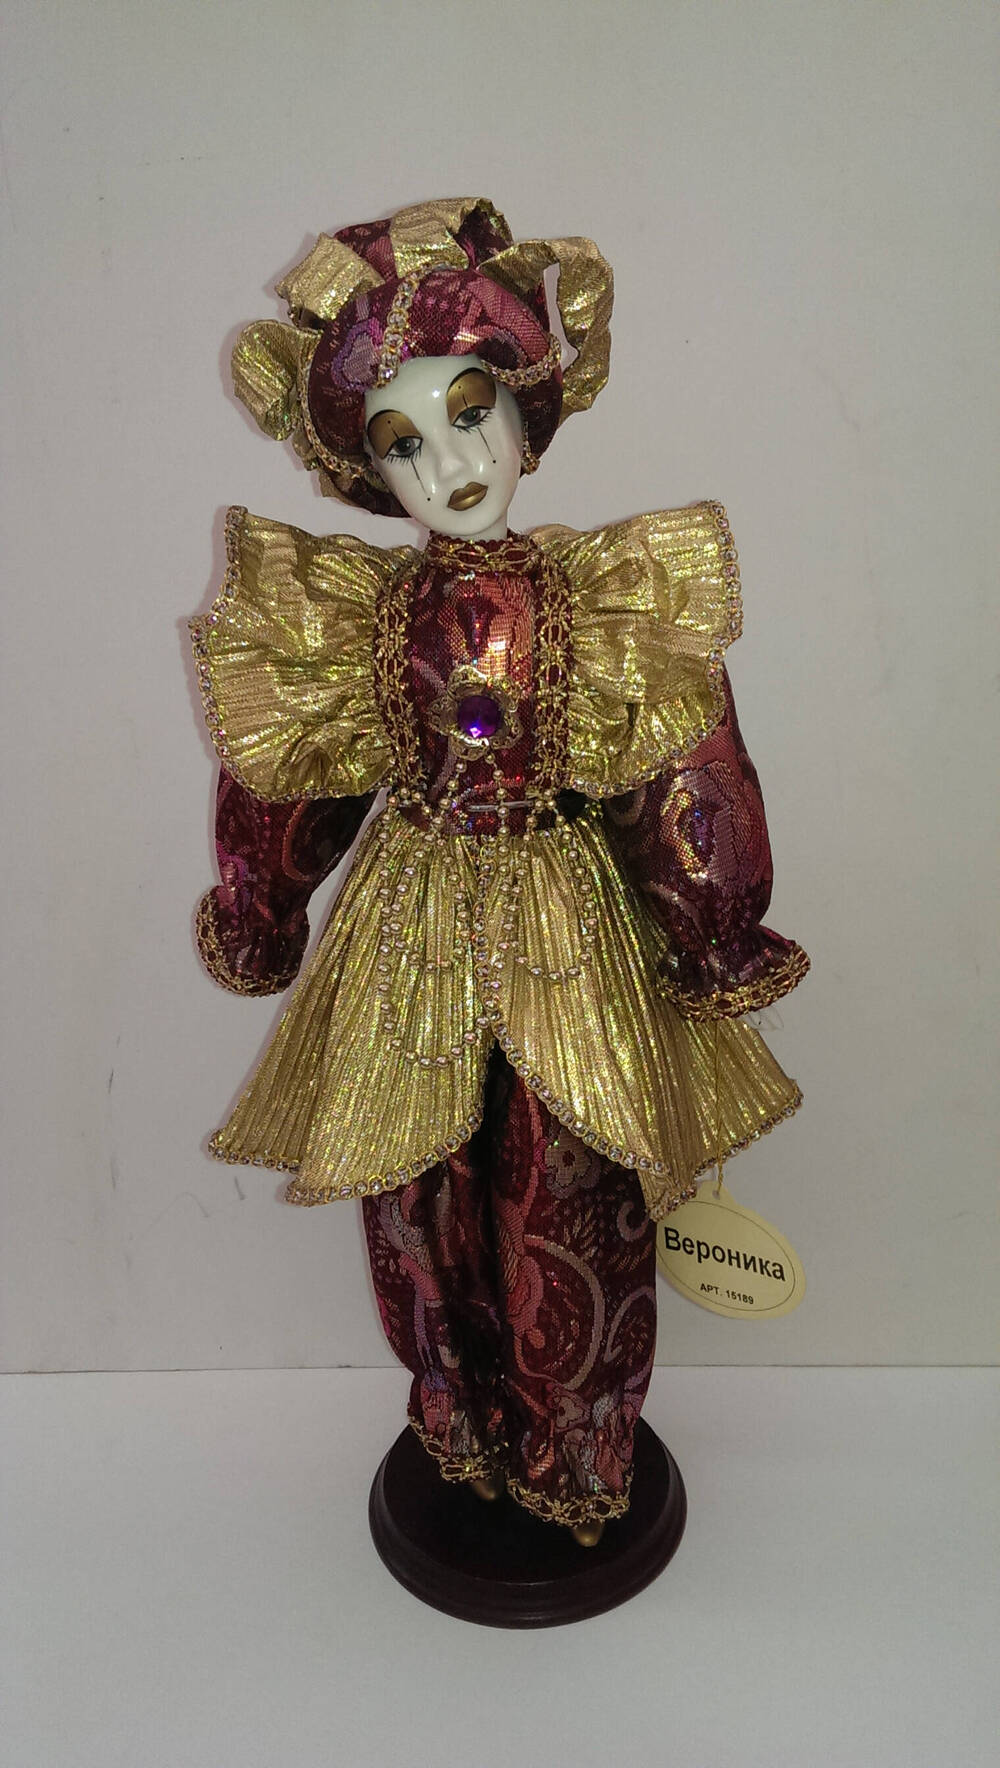 Вероника. Кукла из Коллекции кукол ручной работы с фарфоровыми элементами «Арлекин» компании «Ремеко», Великобритания (Remeco HARLEQUIN Collection).